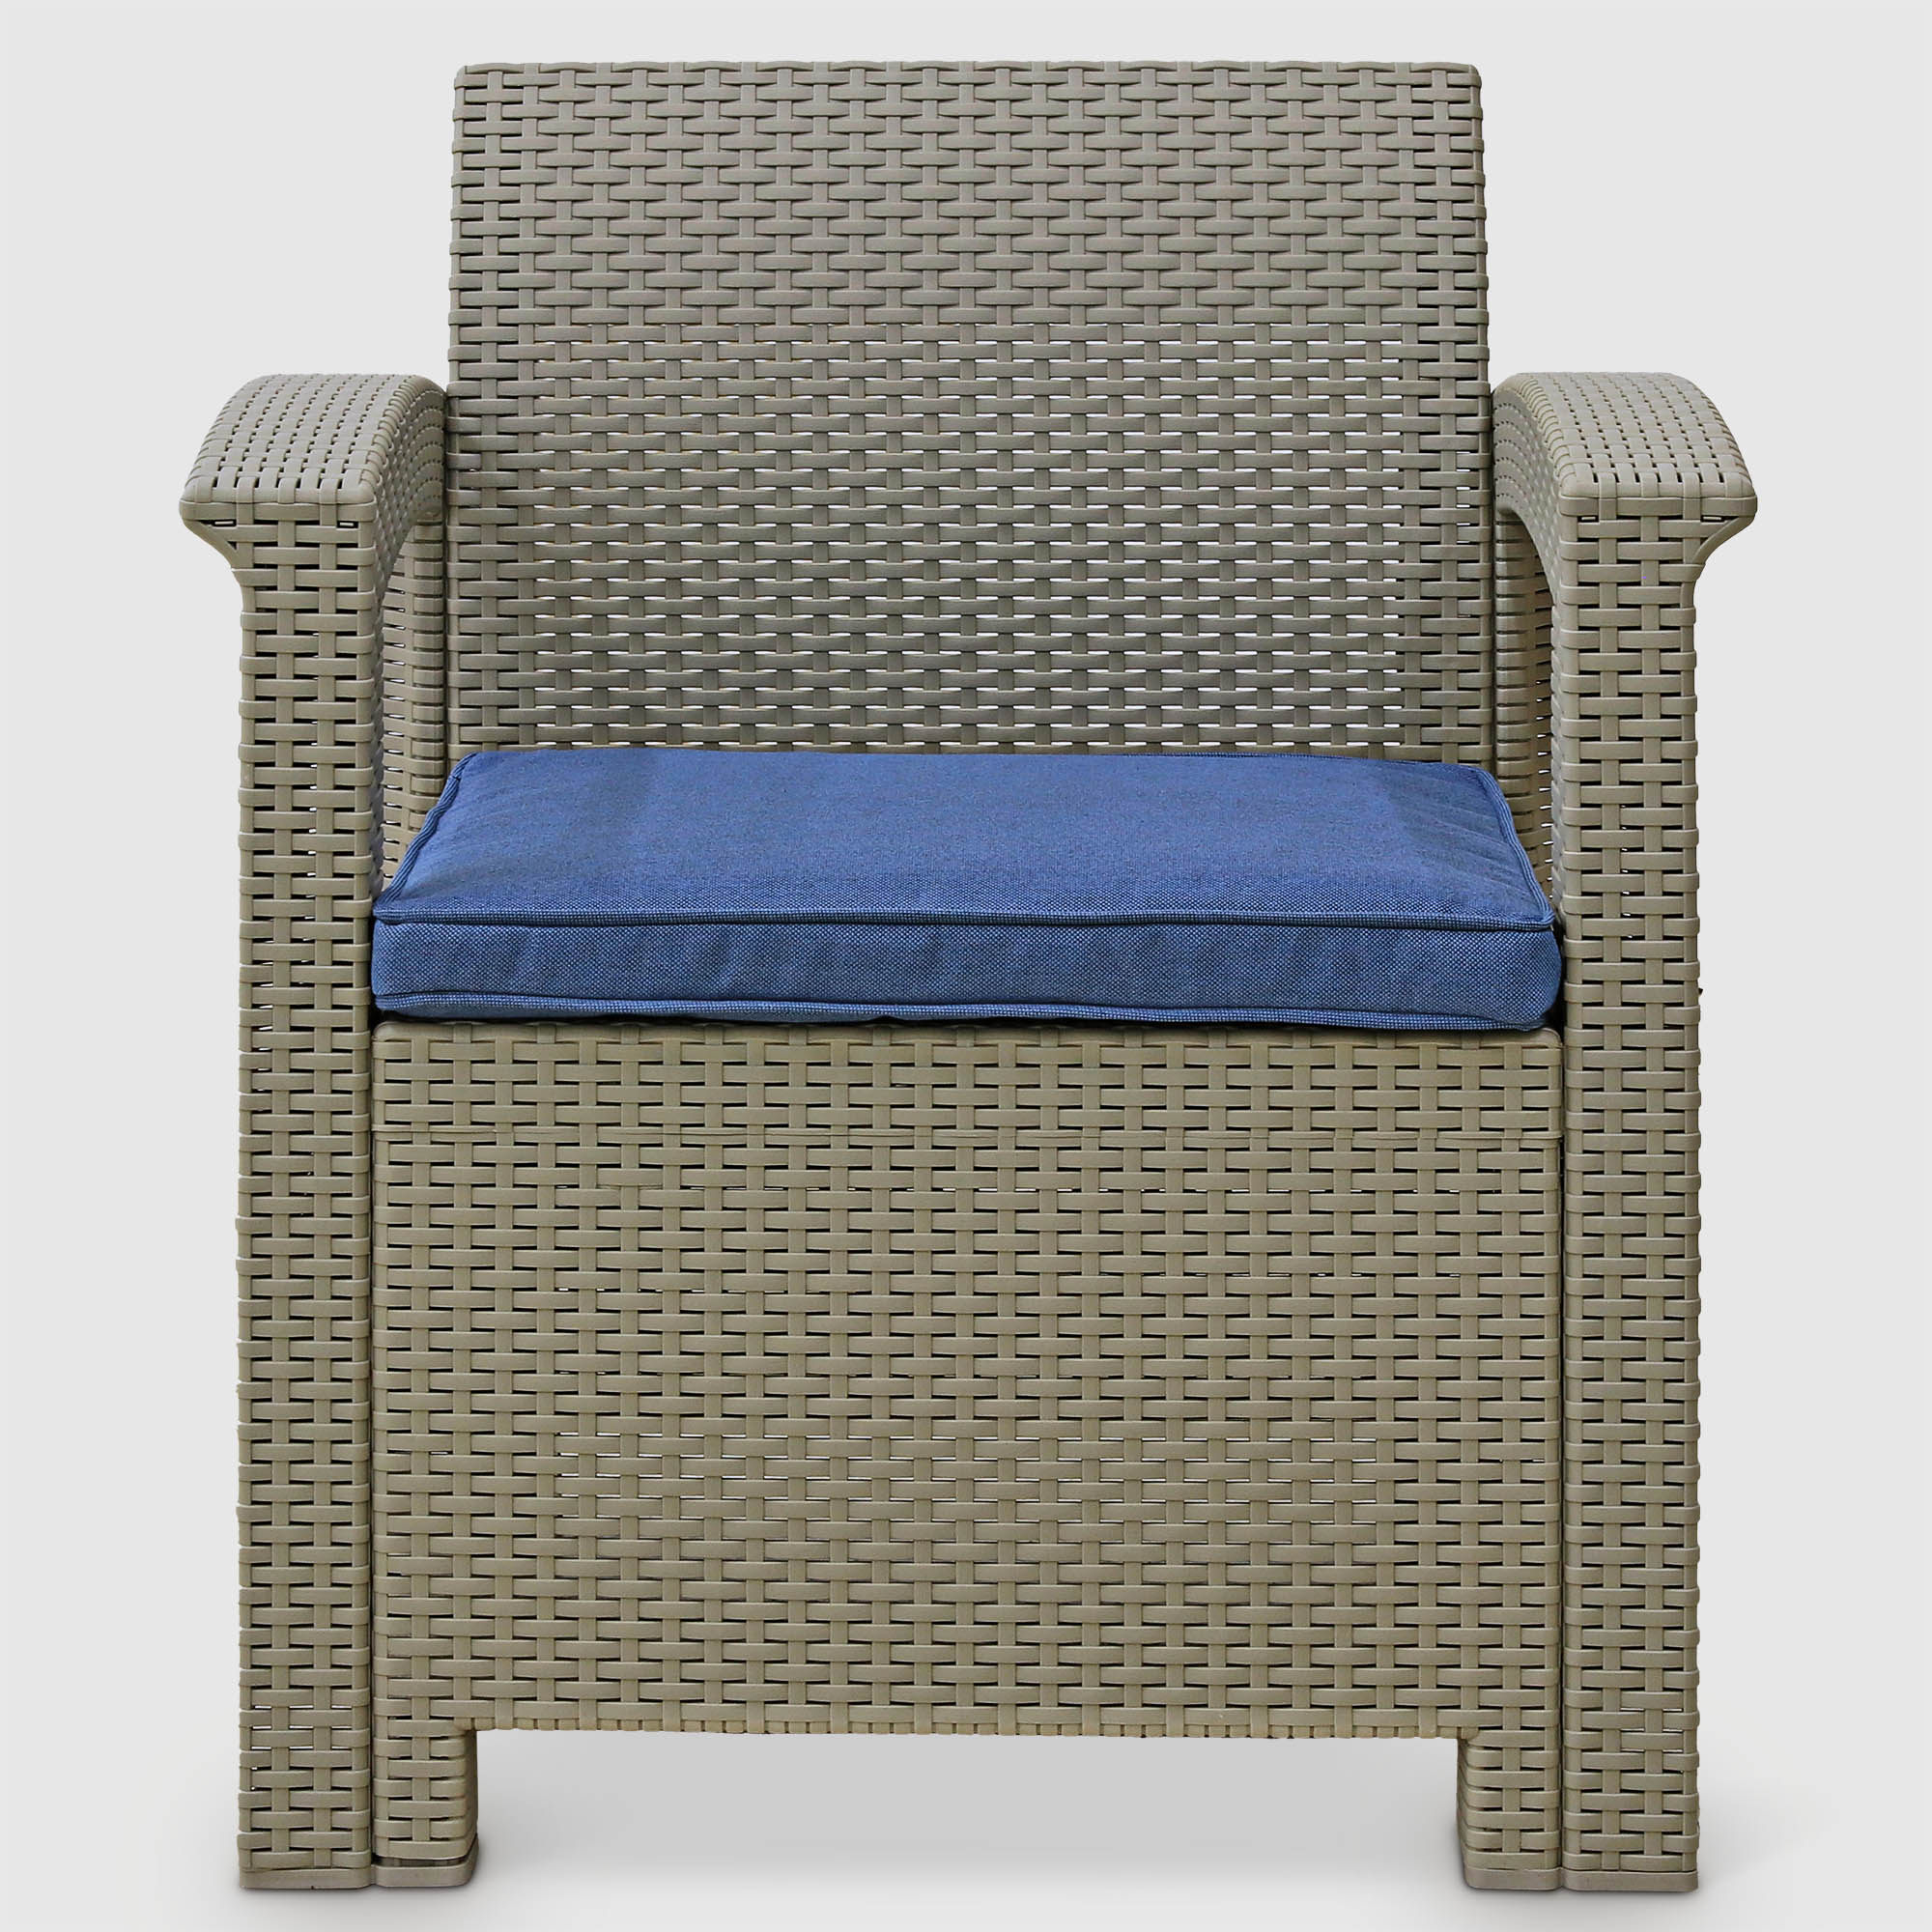 Комплект садовой мебели LF бежевый с синим из 4 предметов, цвет серо-бежевый, размер 173х62 - фото 4